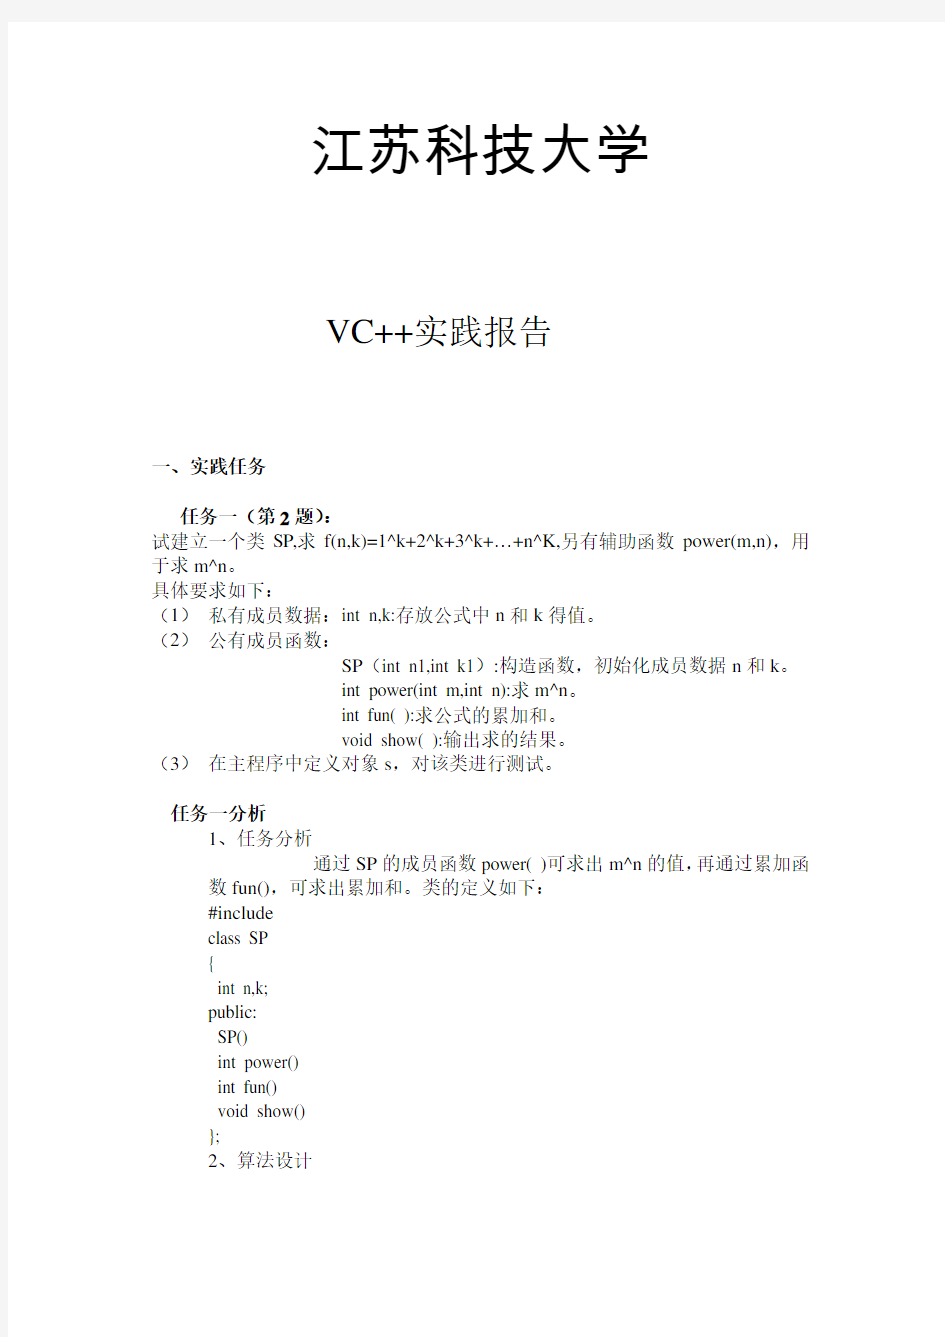 (完整版)江苏科技大学VC++程序实践答案